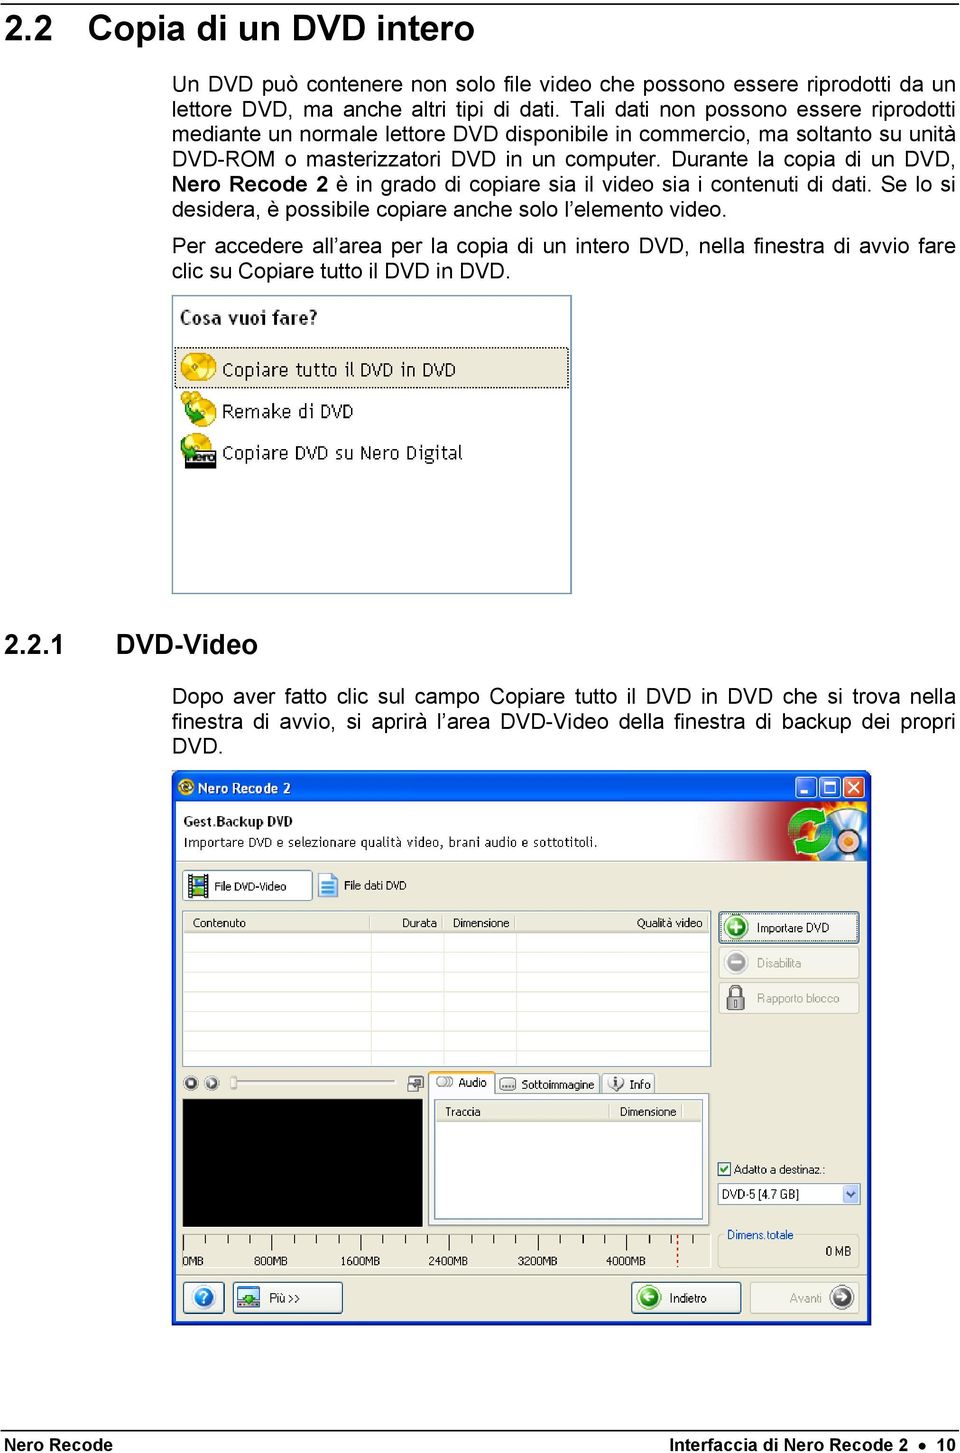 Durante la copia di un DVD, Nero Recode 2 è in grado di copiare sia il video sia i contenuti di dati. Se lo si desidera, è possibile copiare anche solo l elemento video.